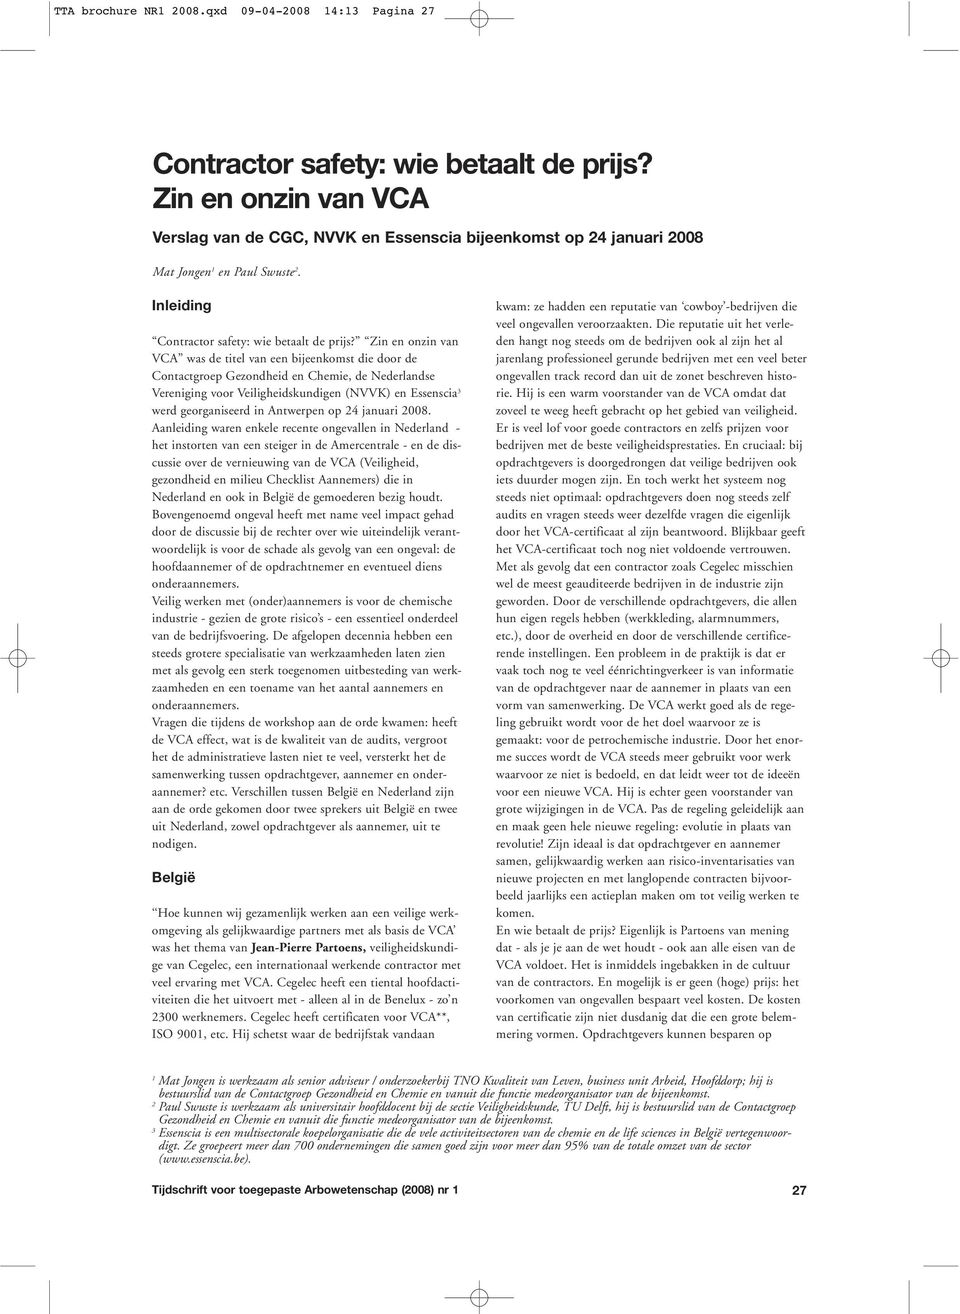 Zin en onzin van VCA was de titel van een bijeenkomst die door de Contactgroep Gezondheid en Chemie, de Nederlandse Vereniging voor Veiligheidskundigen (NVVK) en Essenscia 3 werd georganiseerd in